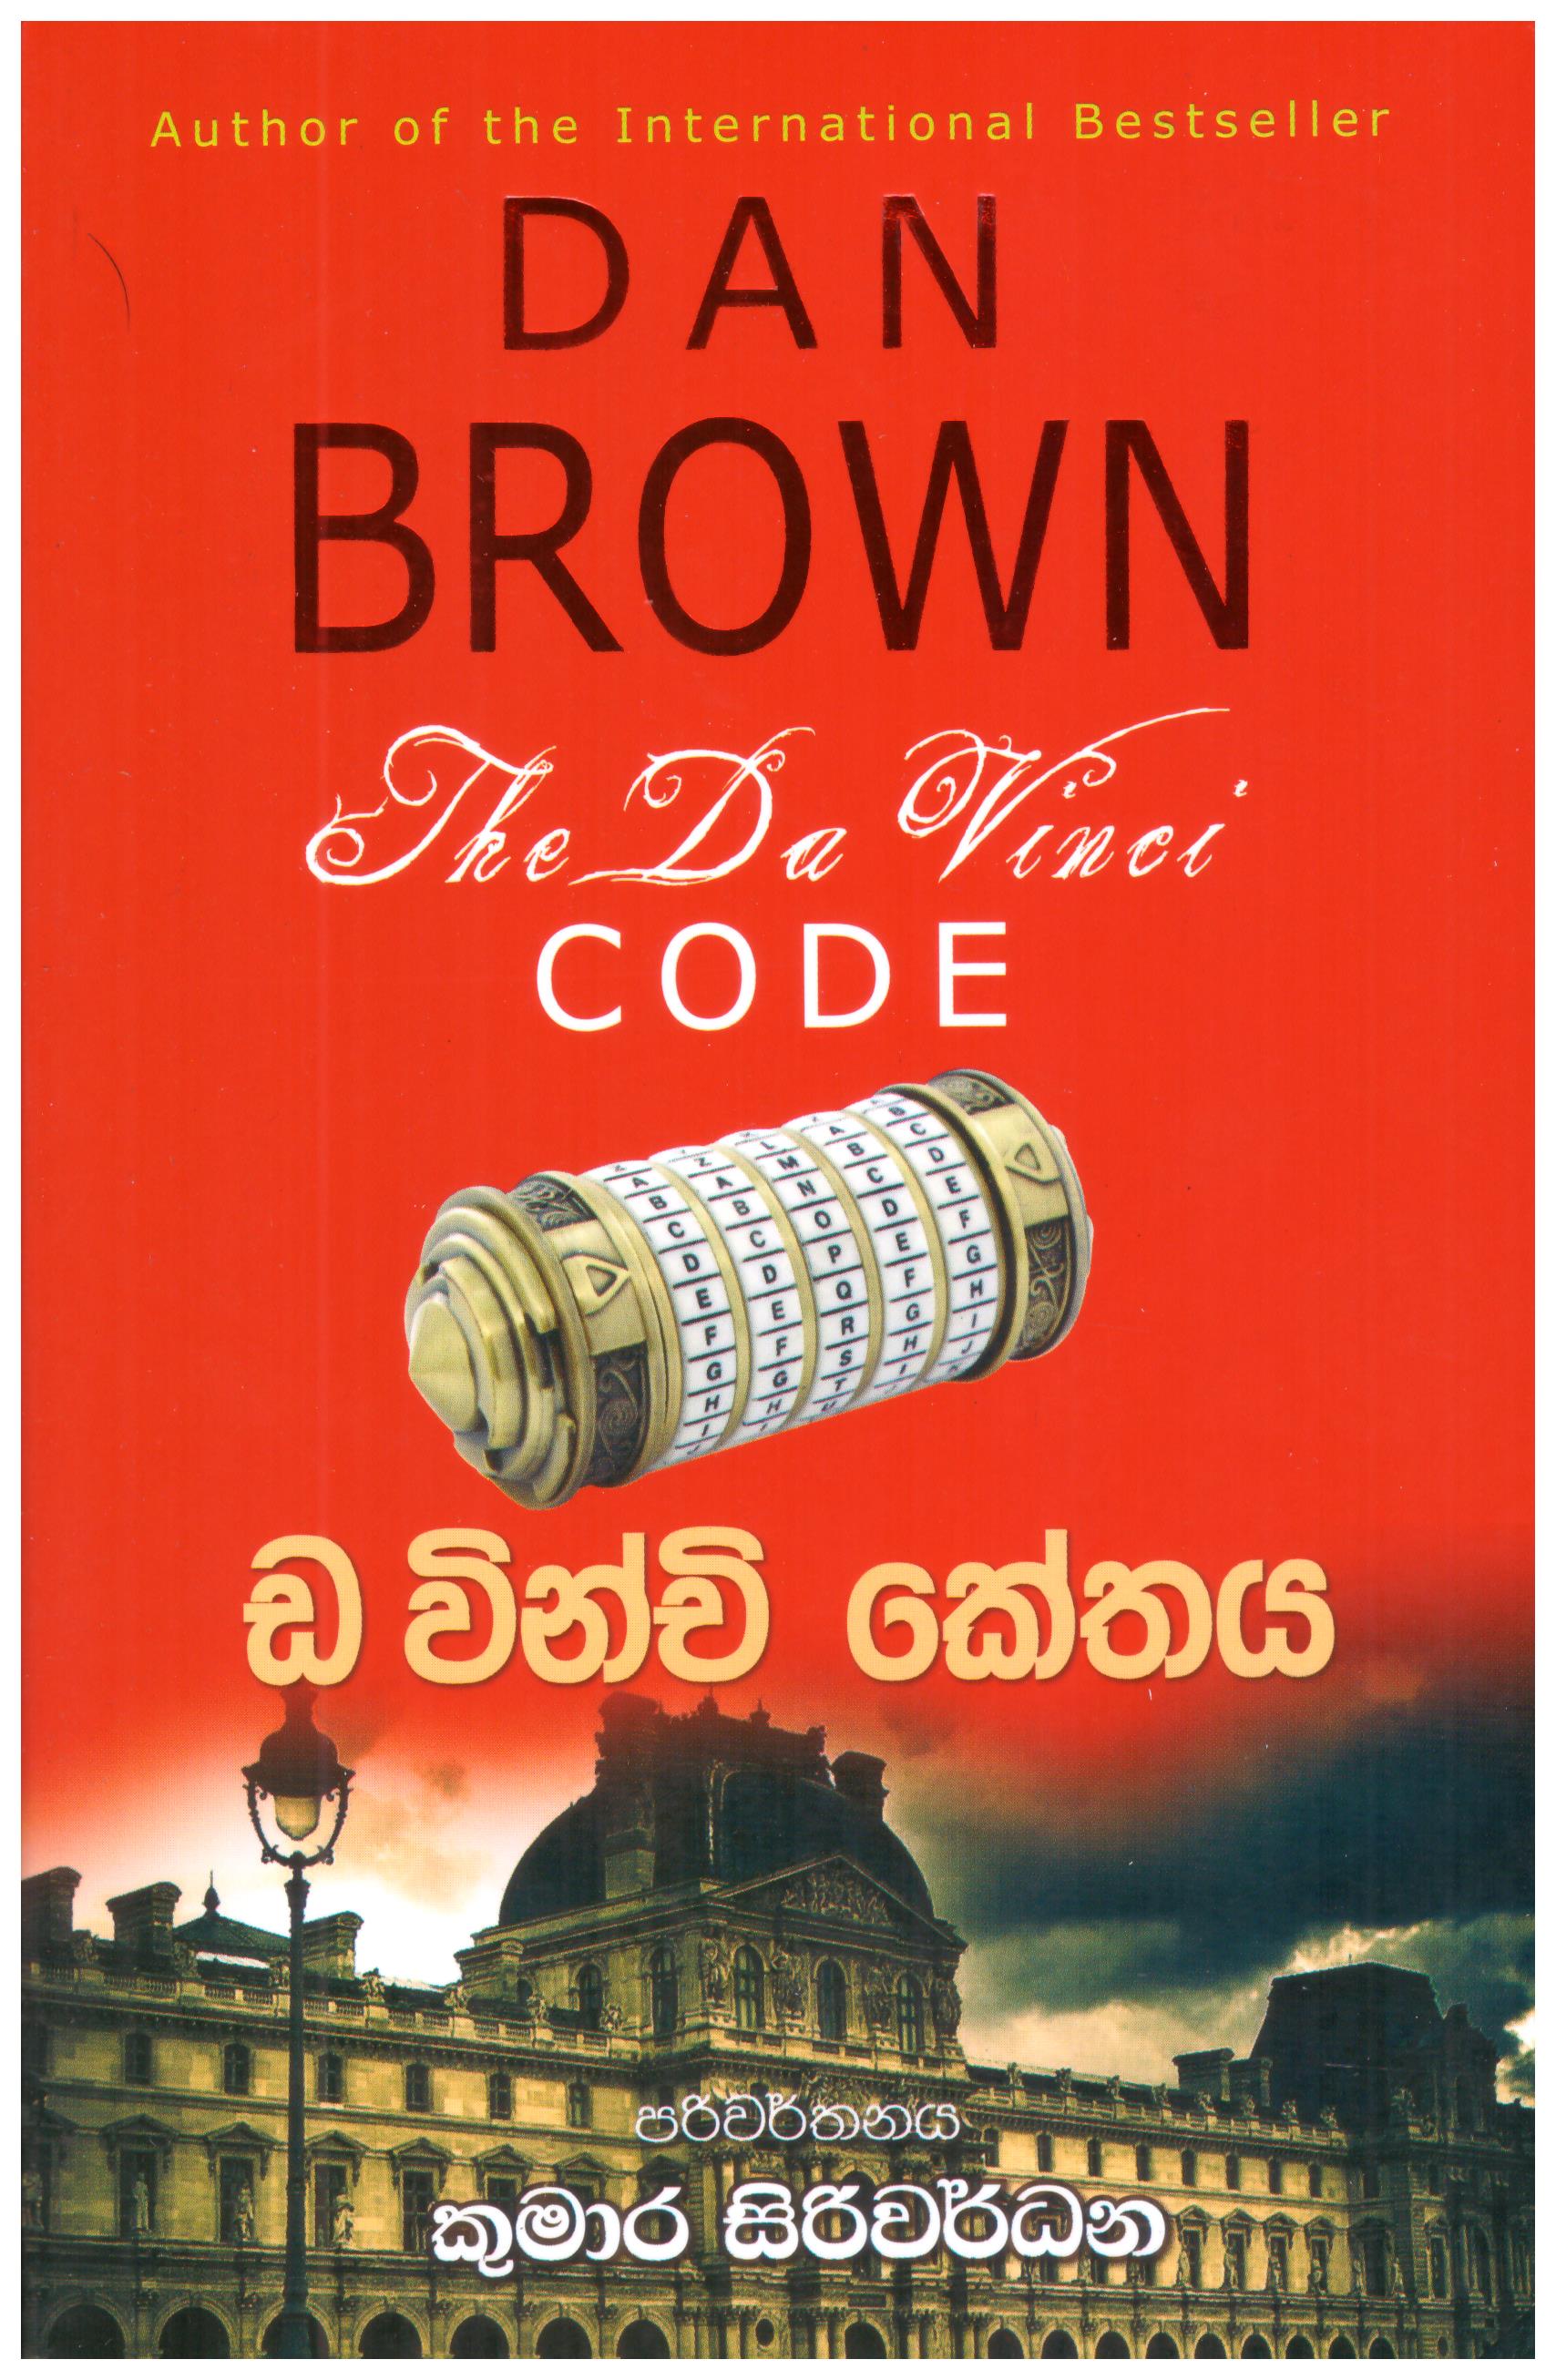 Da Winchi Kethaya - Translation of The Da Vinci Code By Dan Brown